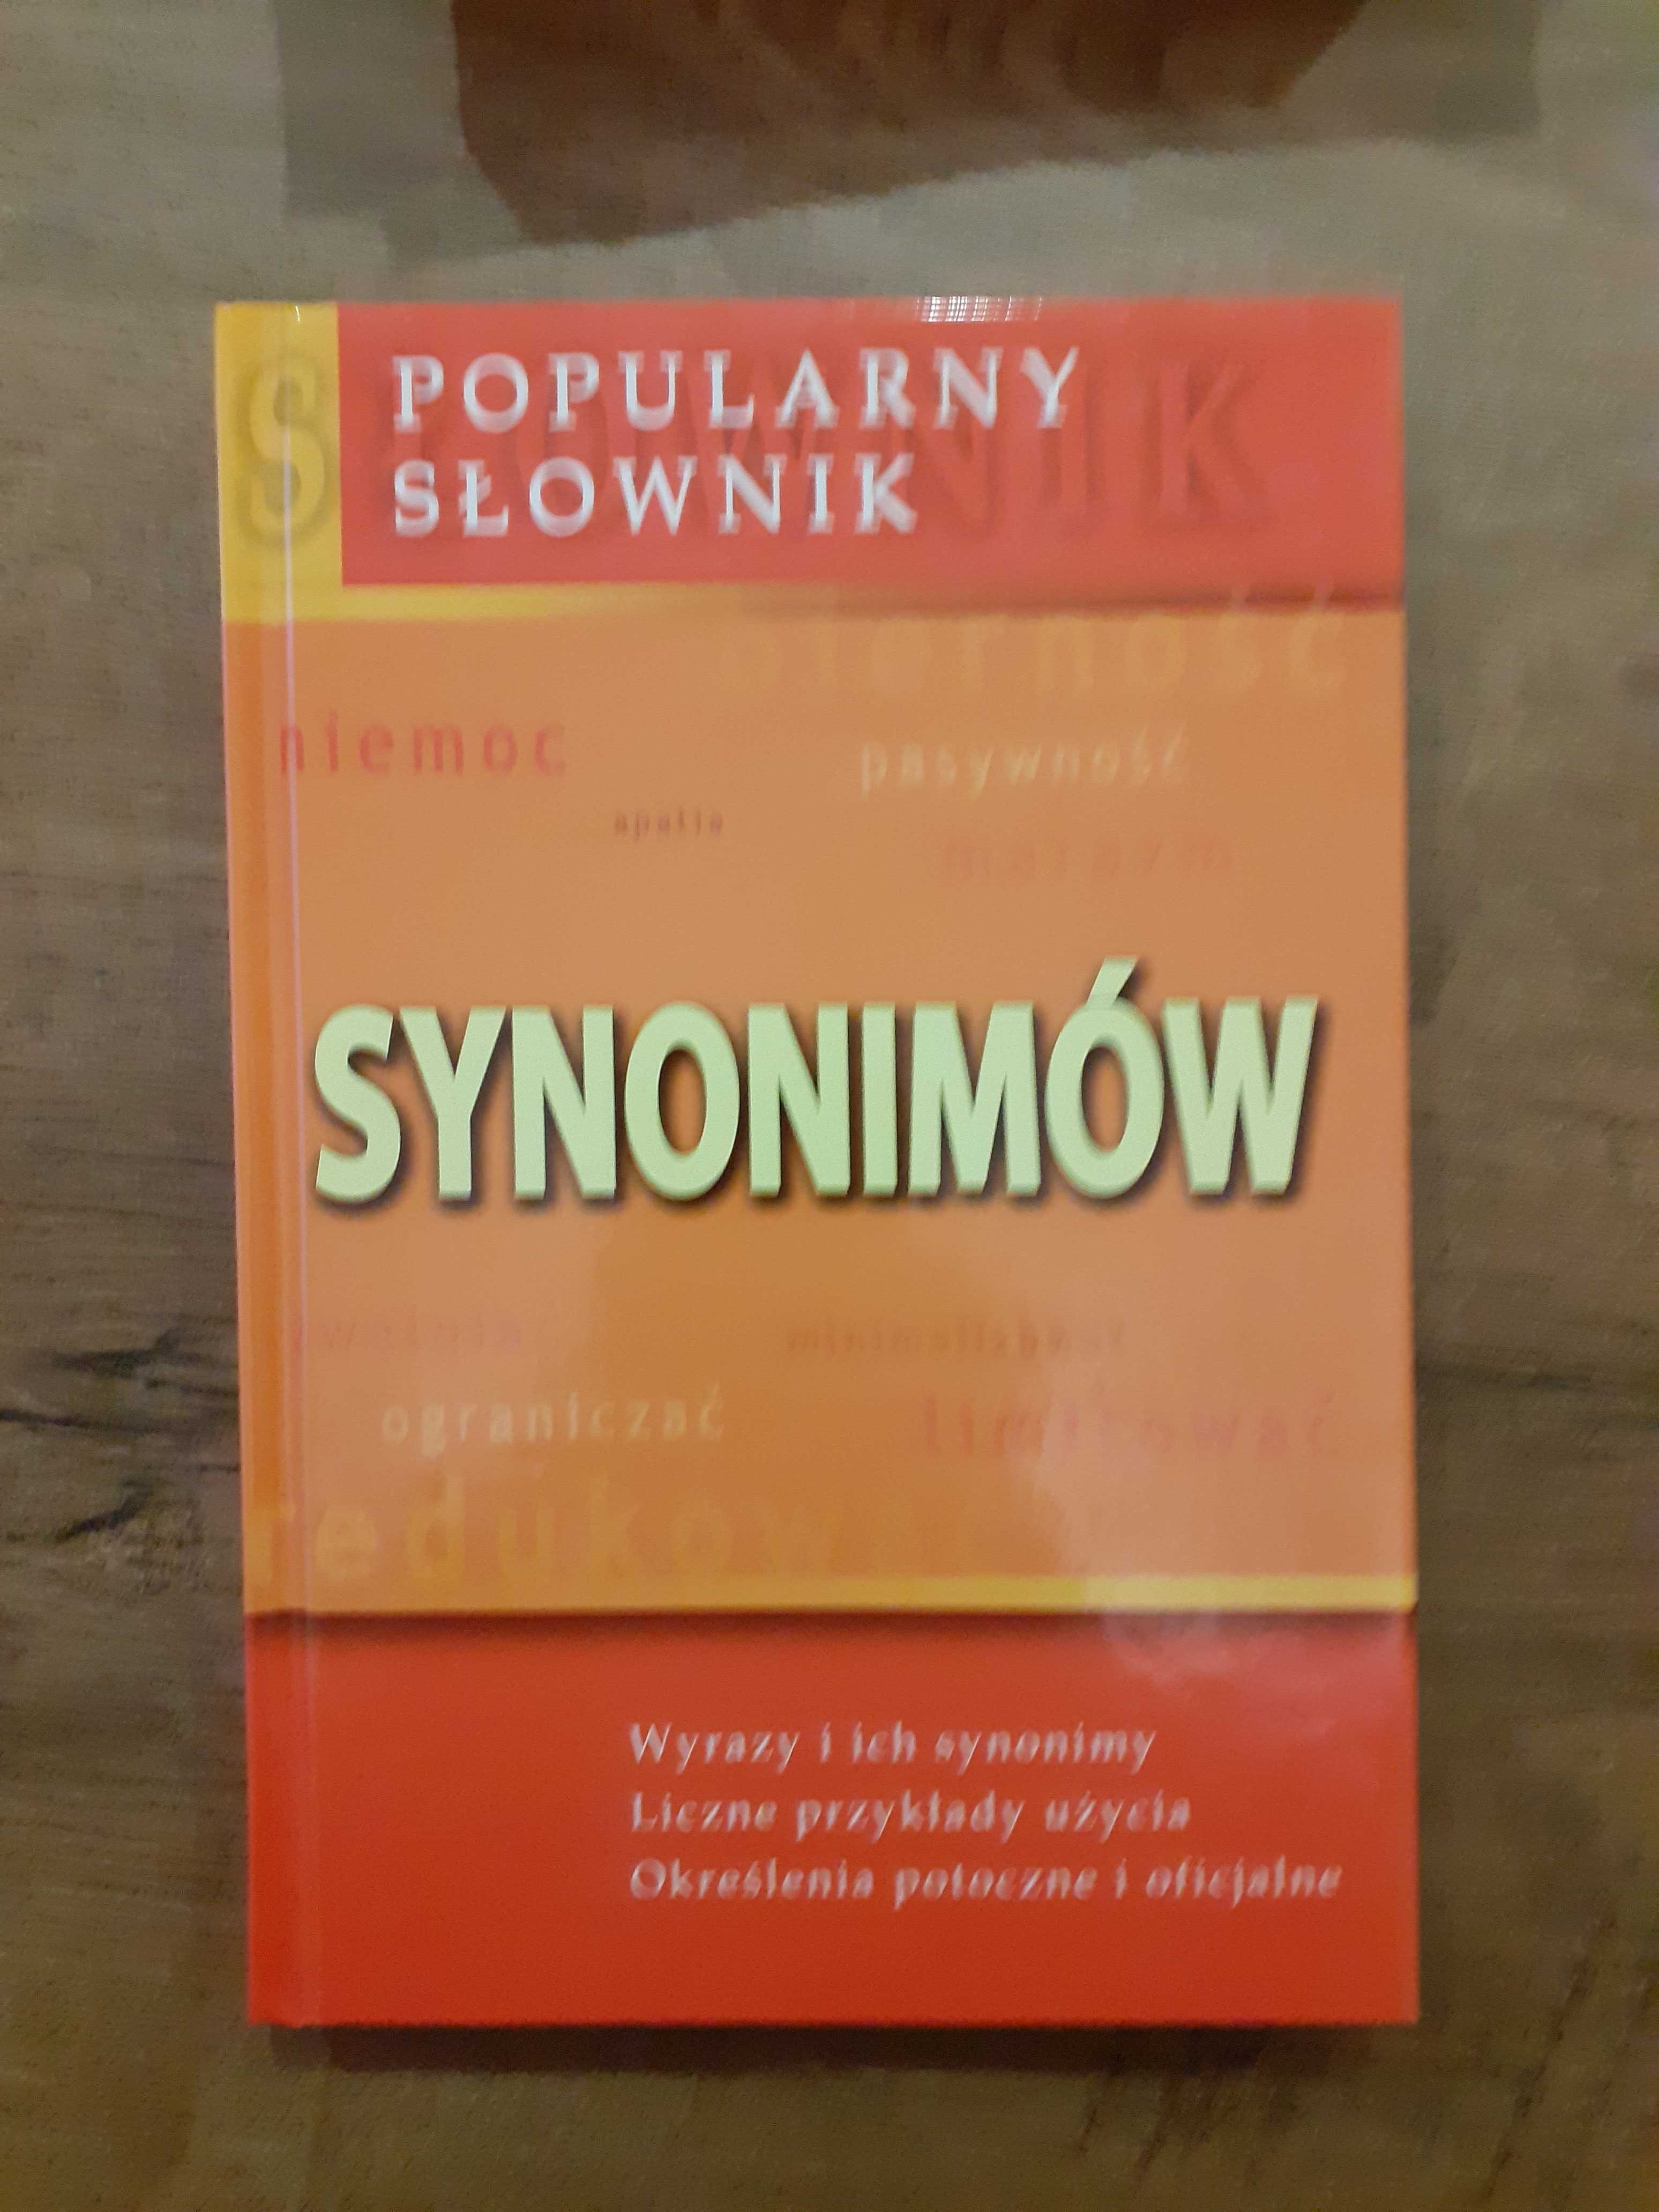 "Popularny słownik synonimów"